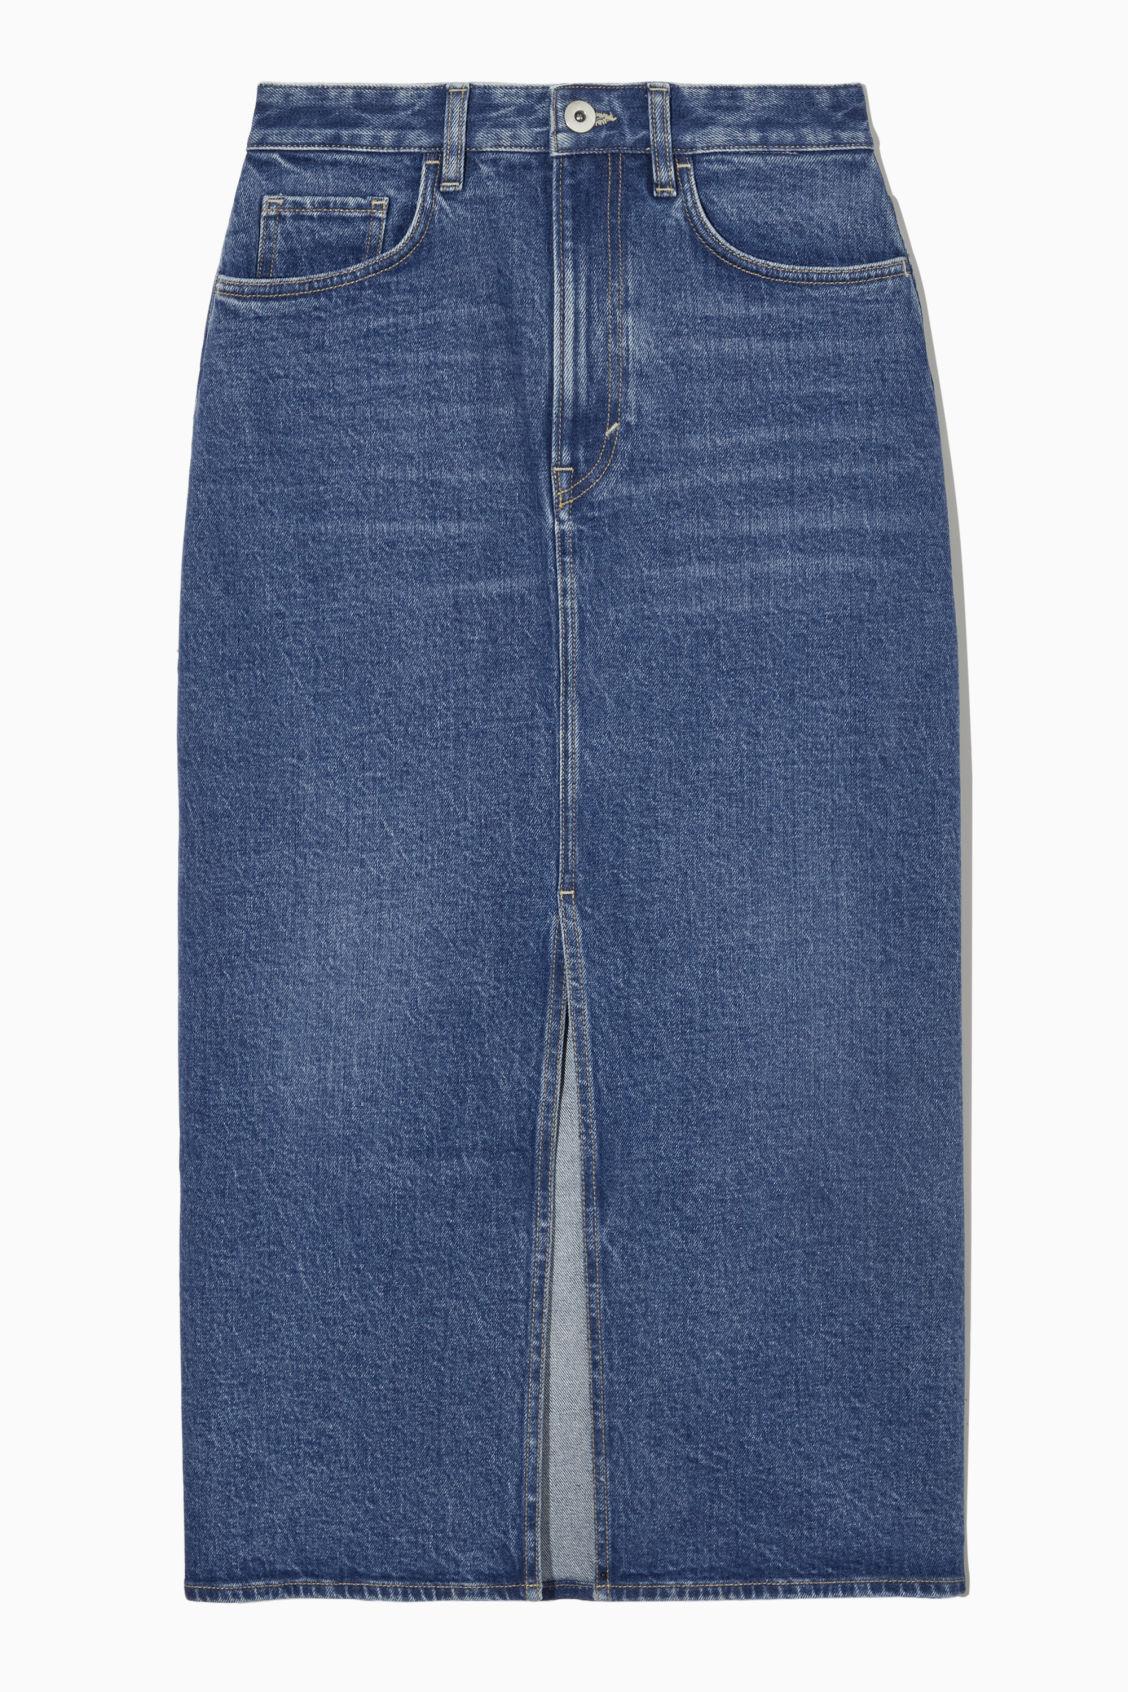 COS Front-slit Denim Midi Skirt in Blue | Lyst